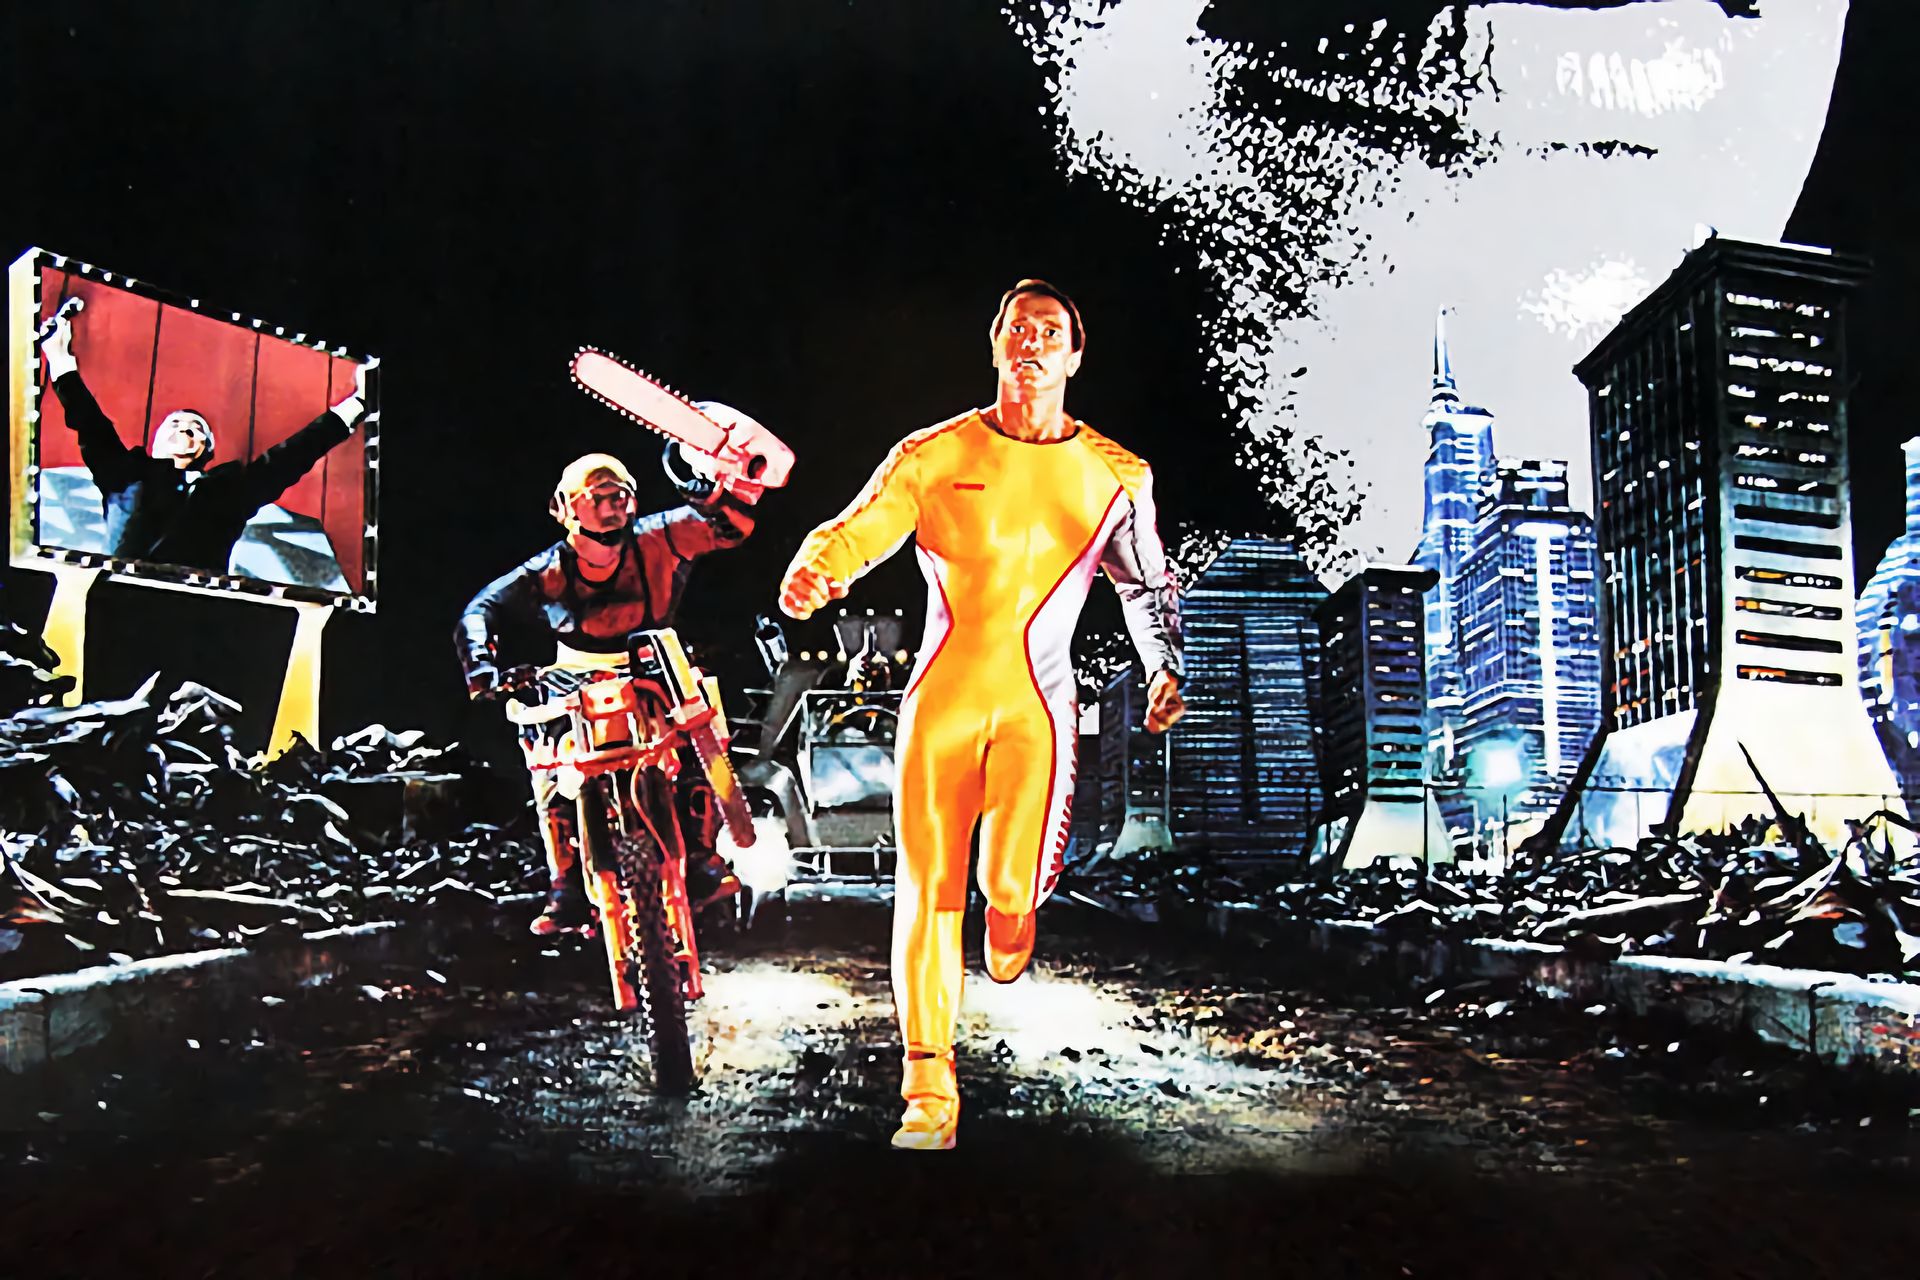 "L'uomo in fuga" ("The Running Man" il titolo originale) è un romanzo di fantascienza scritto da Stephen King e pubblicato con lo pseudonimo di Richard Bachman nel 1982: cinque anni più tardi, dal libro è stato liberamente tratto un film, "L'implacabile", con protagonista Arnold Schwarzenegger